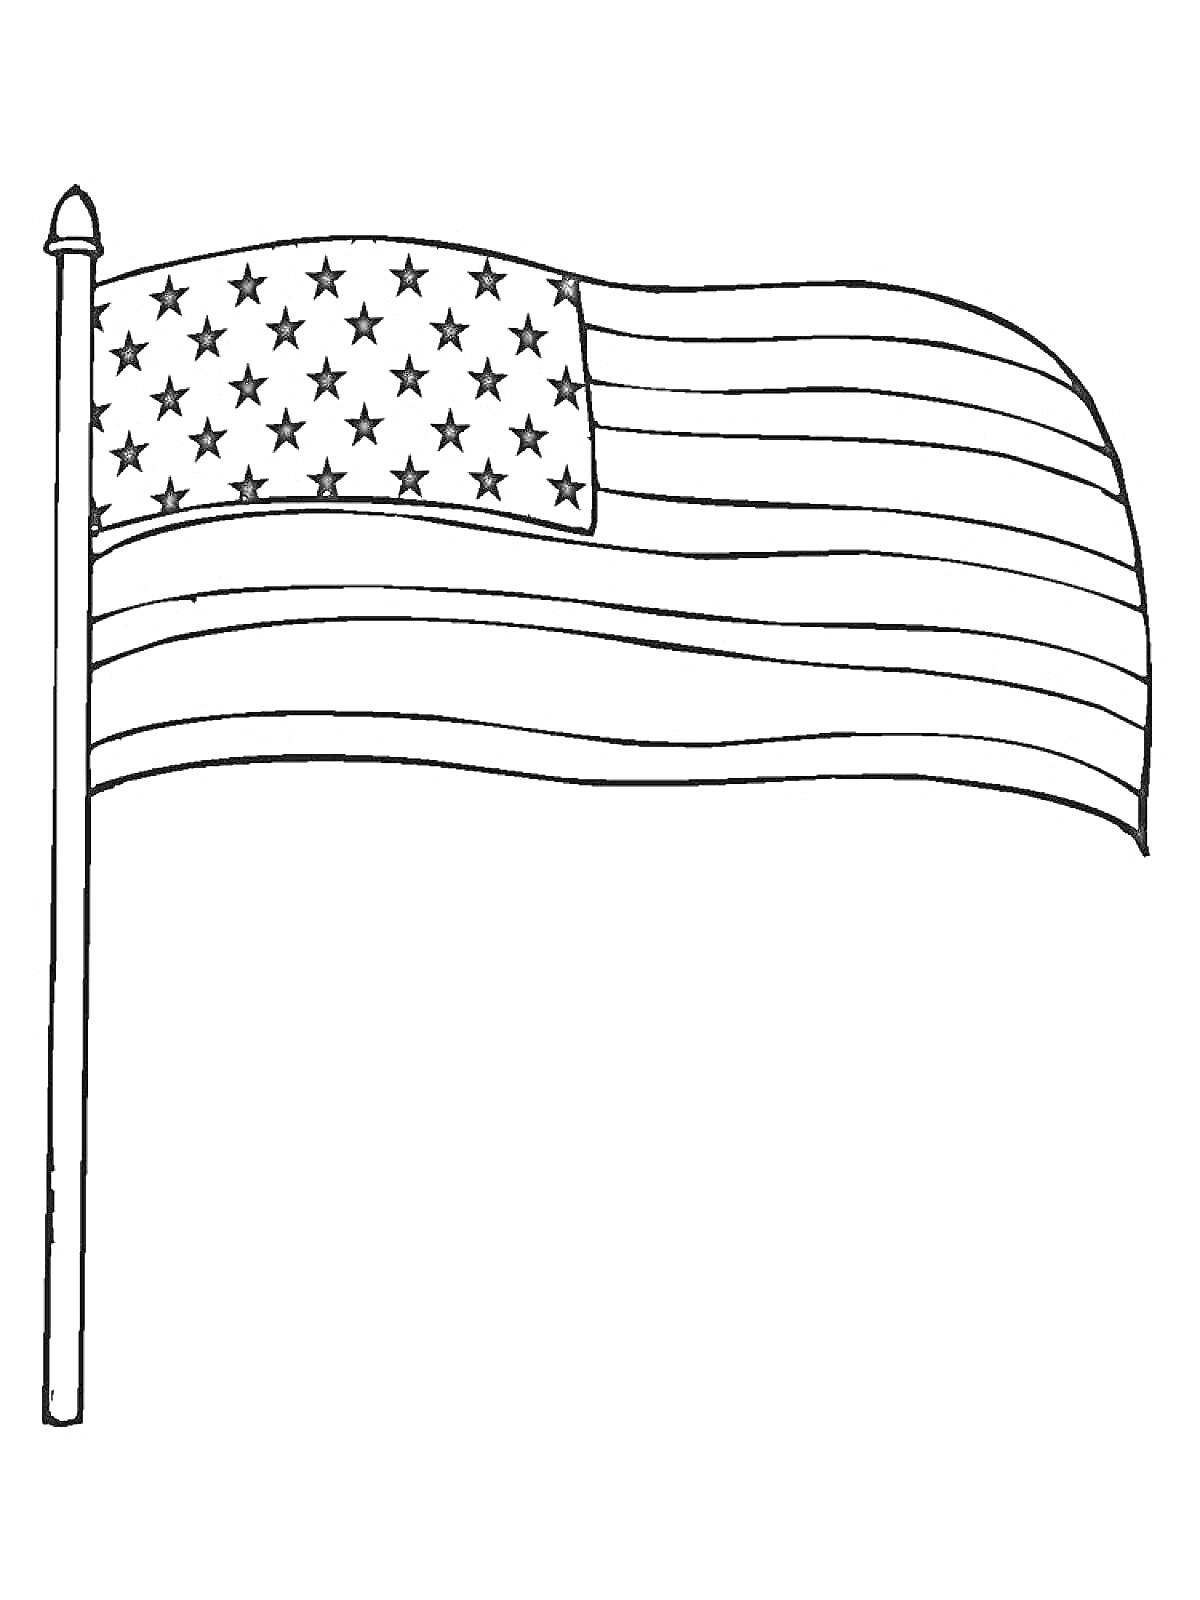 Раскраска Флаг с пятьюдесятью звездами и тринадцатью полосами на флагштоке